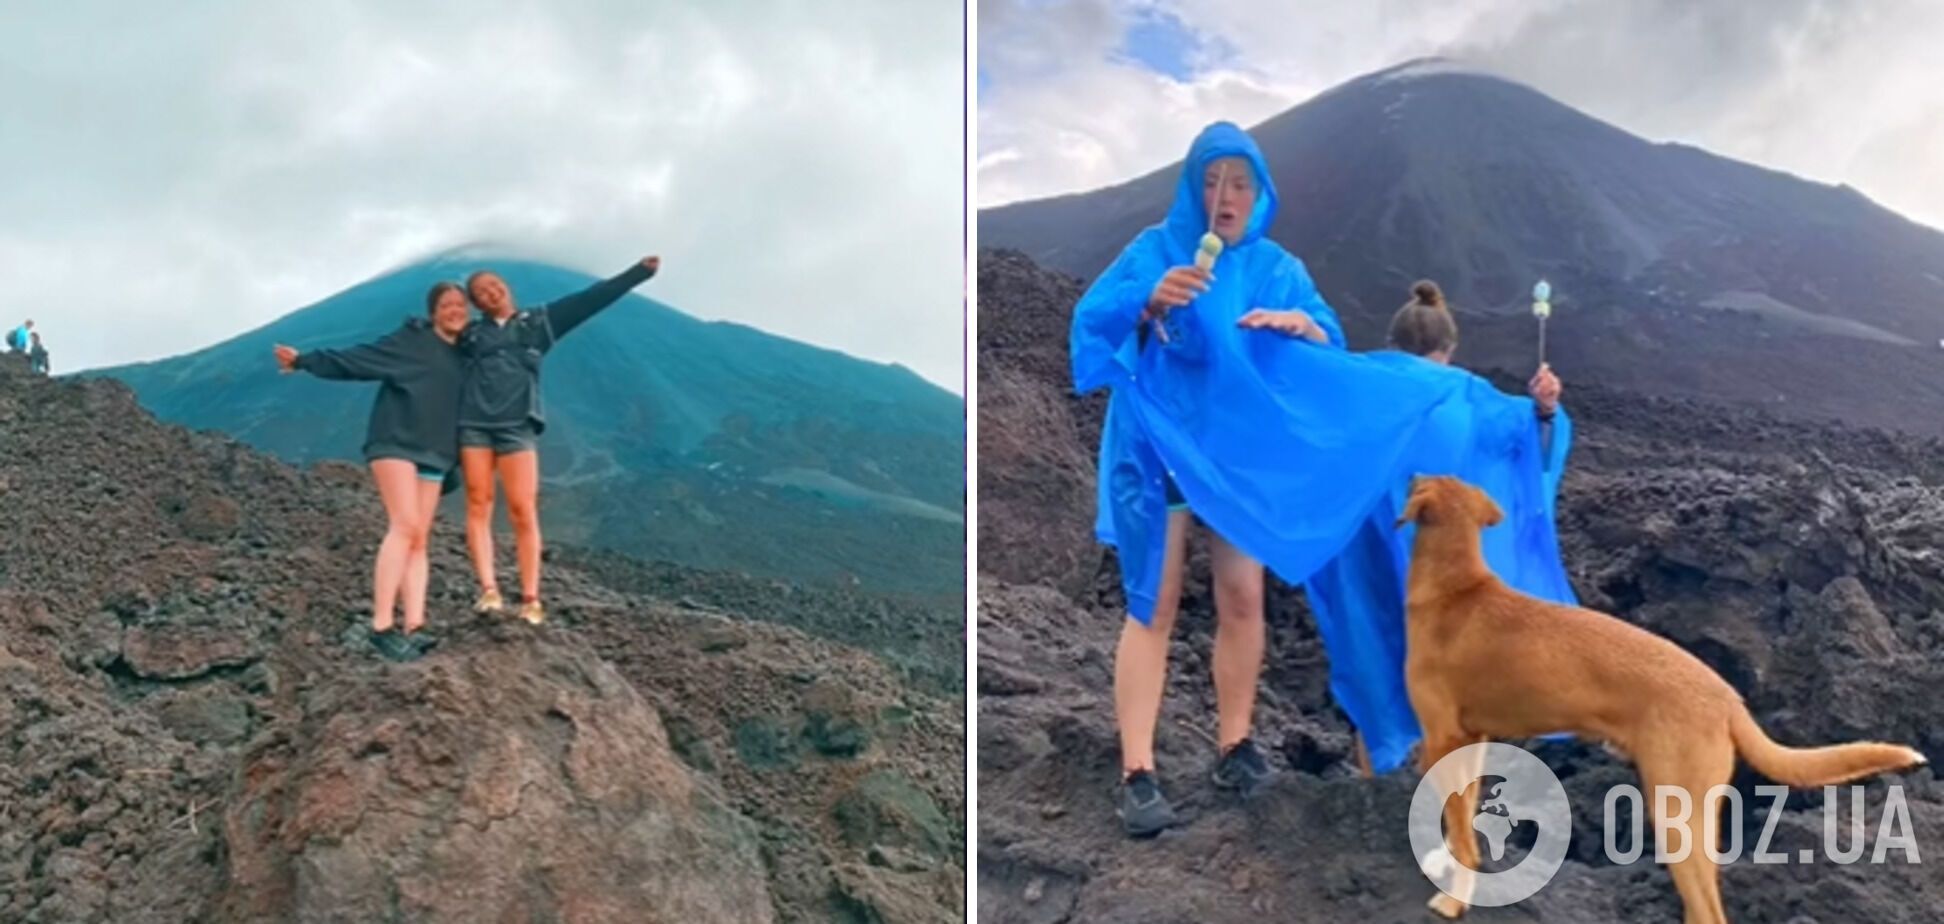 Луиза с подругой совершили триумфальный кадр на вершине вулкана